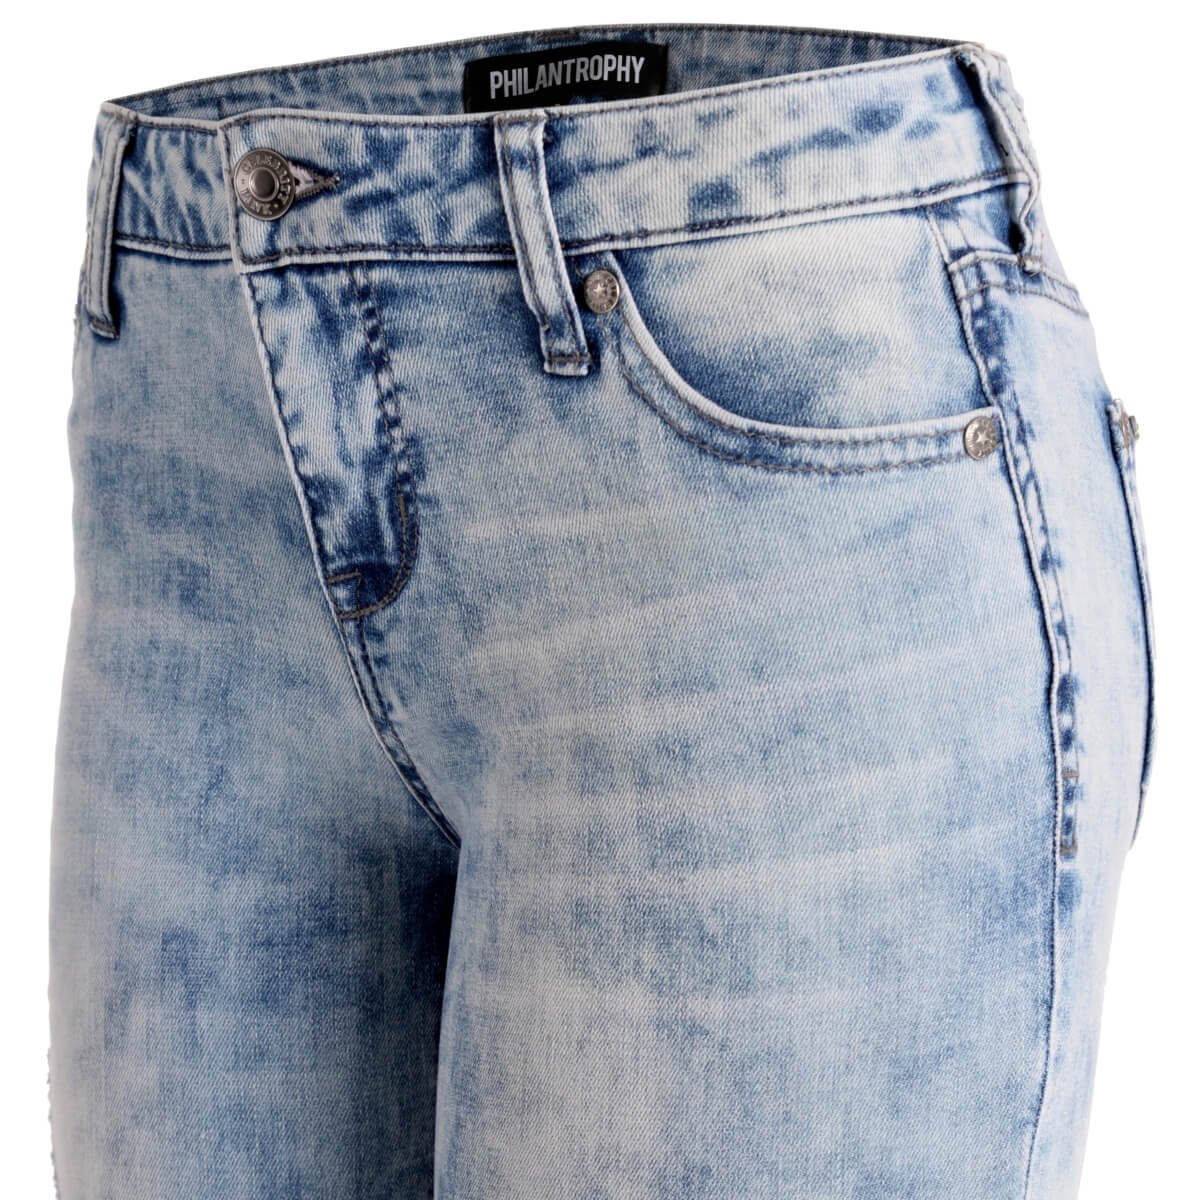 Jeans Corte Skinny Deslavados Philantrophy